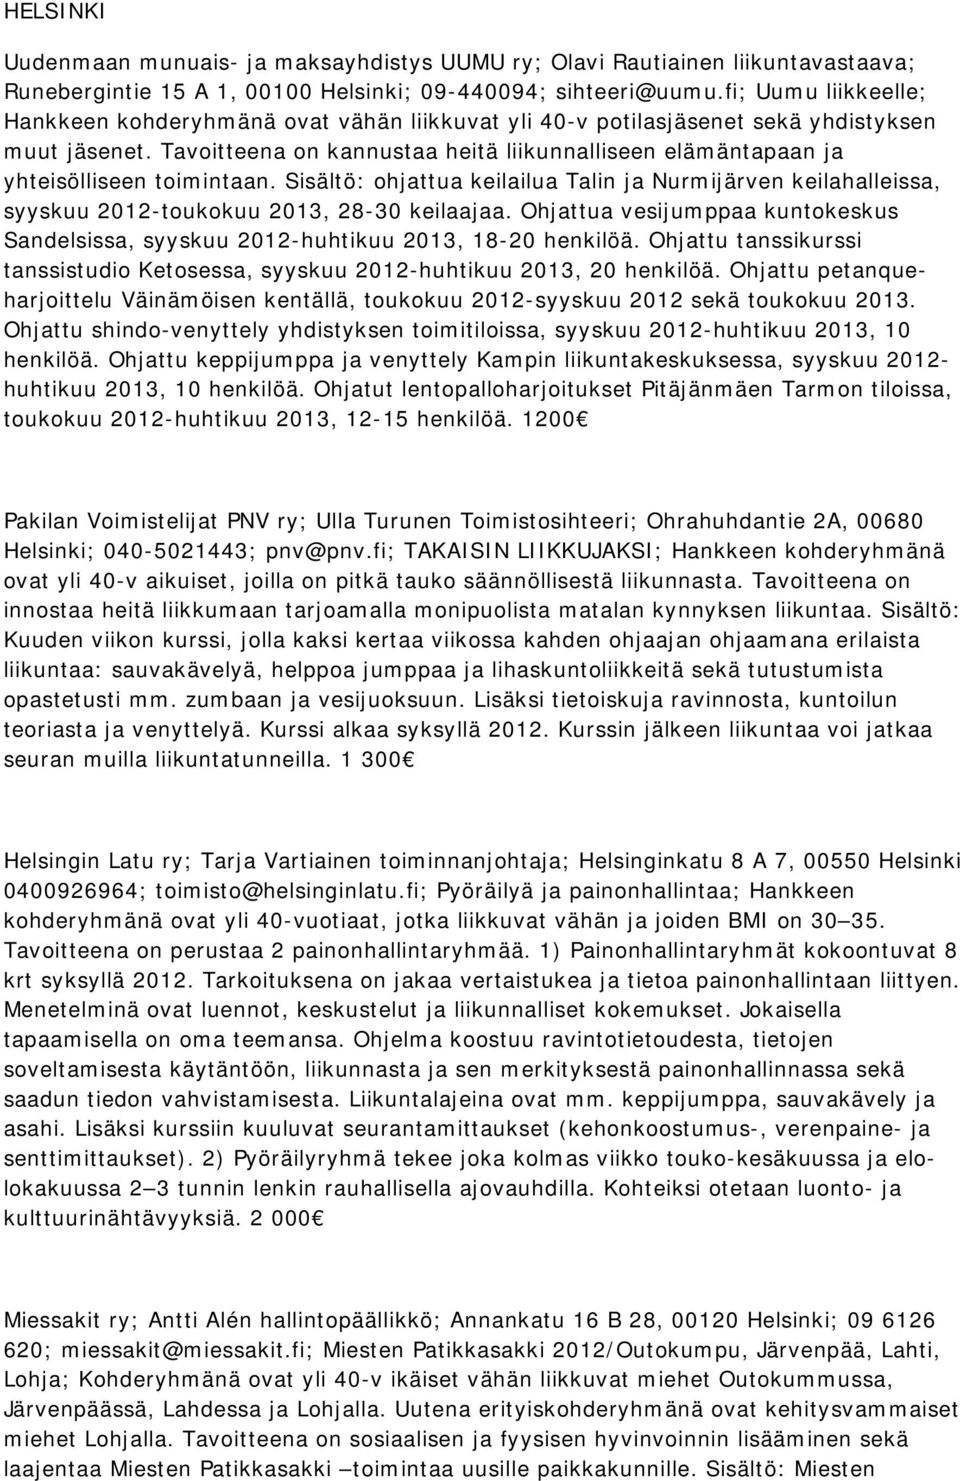 Tavoitteena on kannustaa heitä liikunnalliseen elämäntapaan ja yhteisölliseen toimintaan. Sisältö: ohjattua keilailua Talin ja Nurmijärven keilahalleissa, syyskuu 2012-toukokuu 2013, 28-30 keilaajaa.